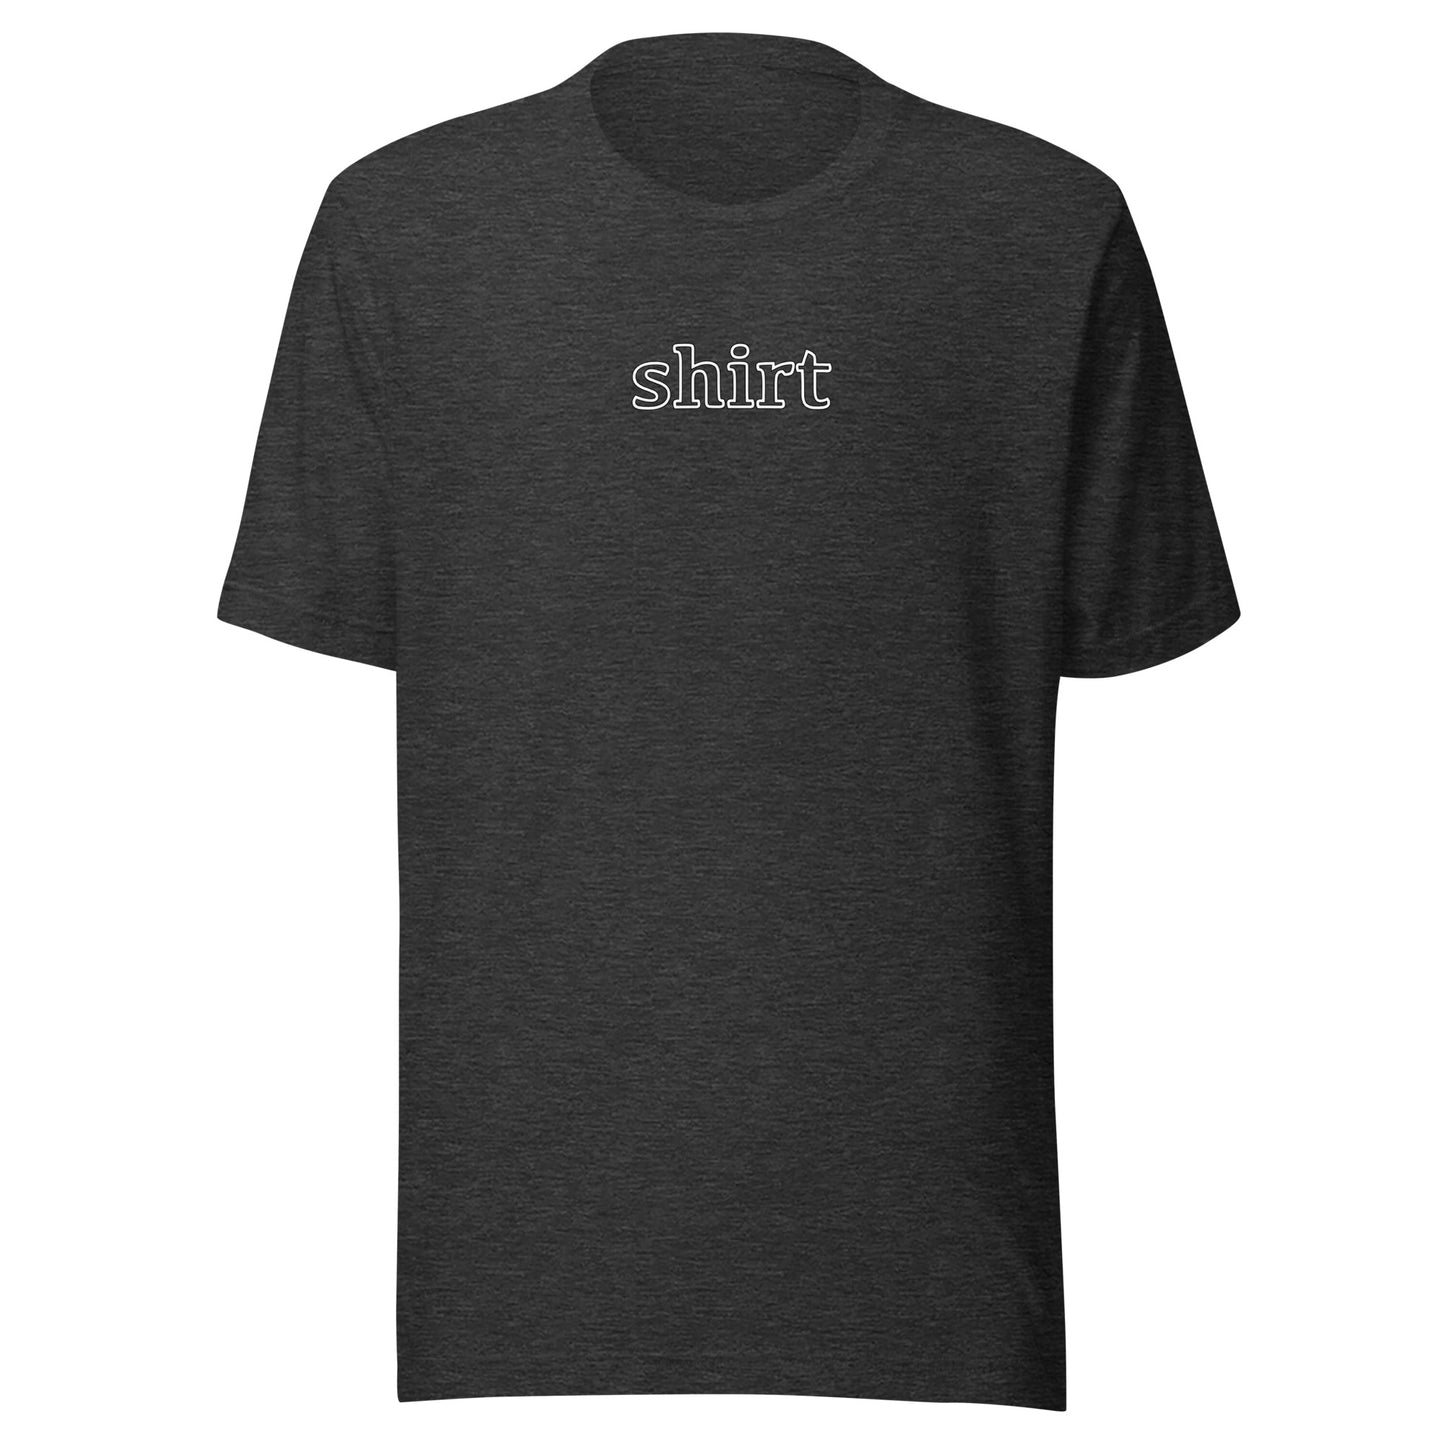 Shirt - Unisex t-shirt